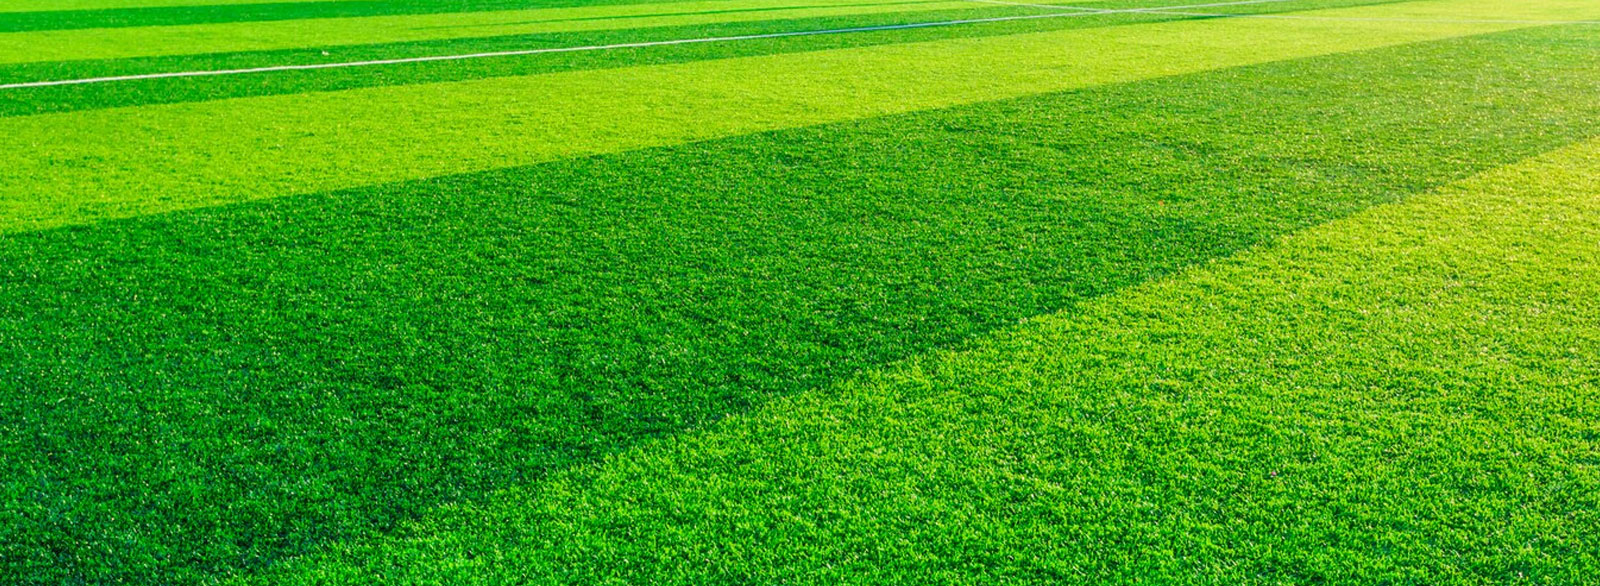 Искусственный газон для футбола - какой лучше выбрать?